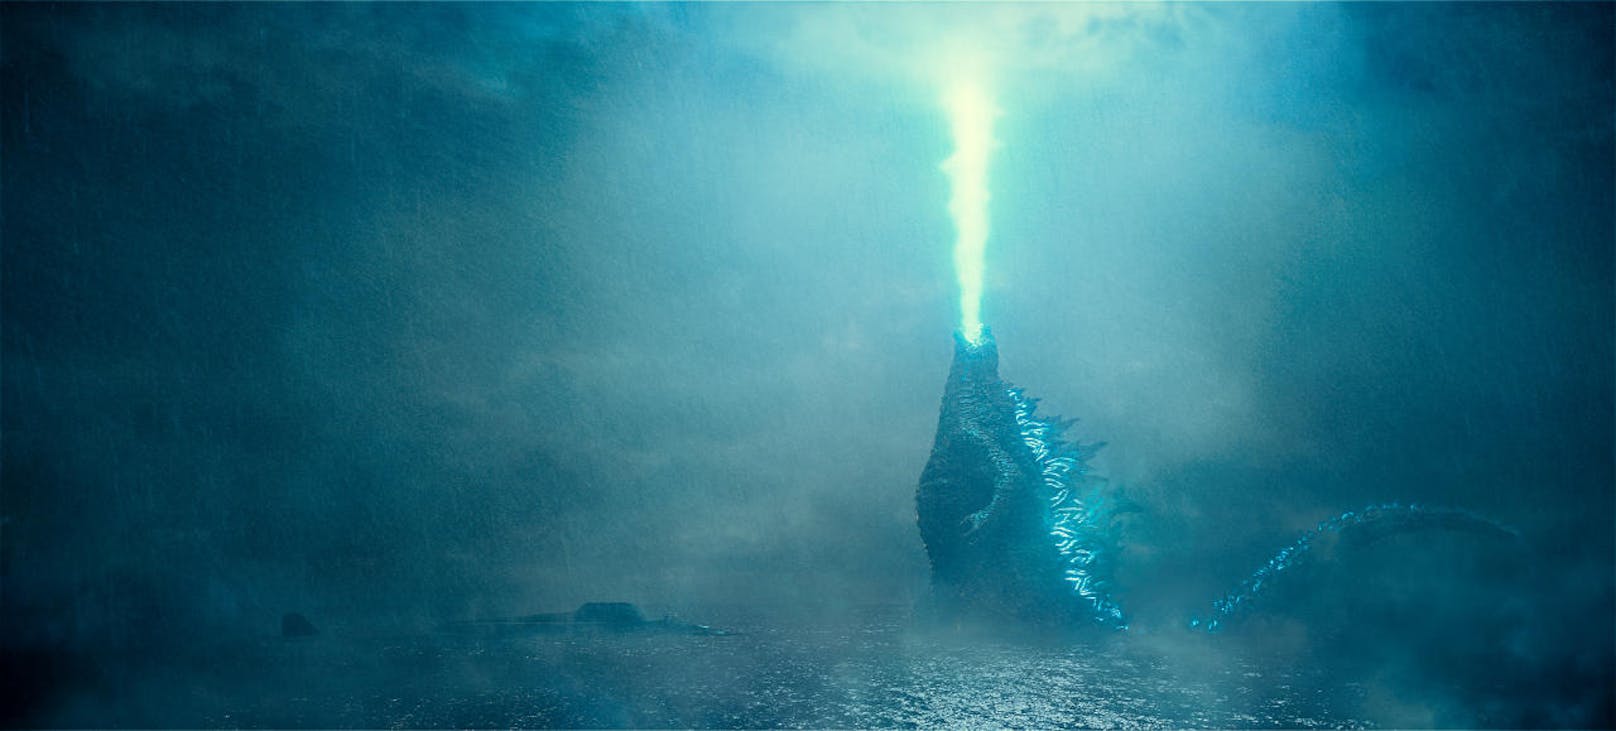 Die titelgebende Riesenechse in "Godzilla: King of the Monsters"